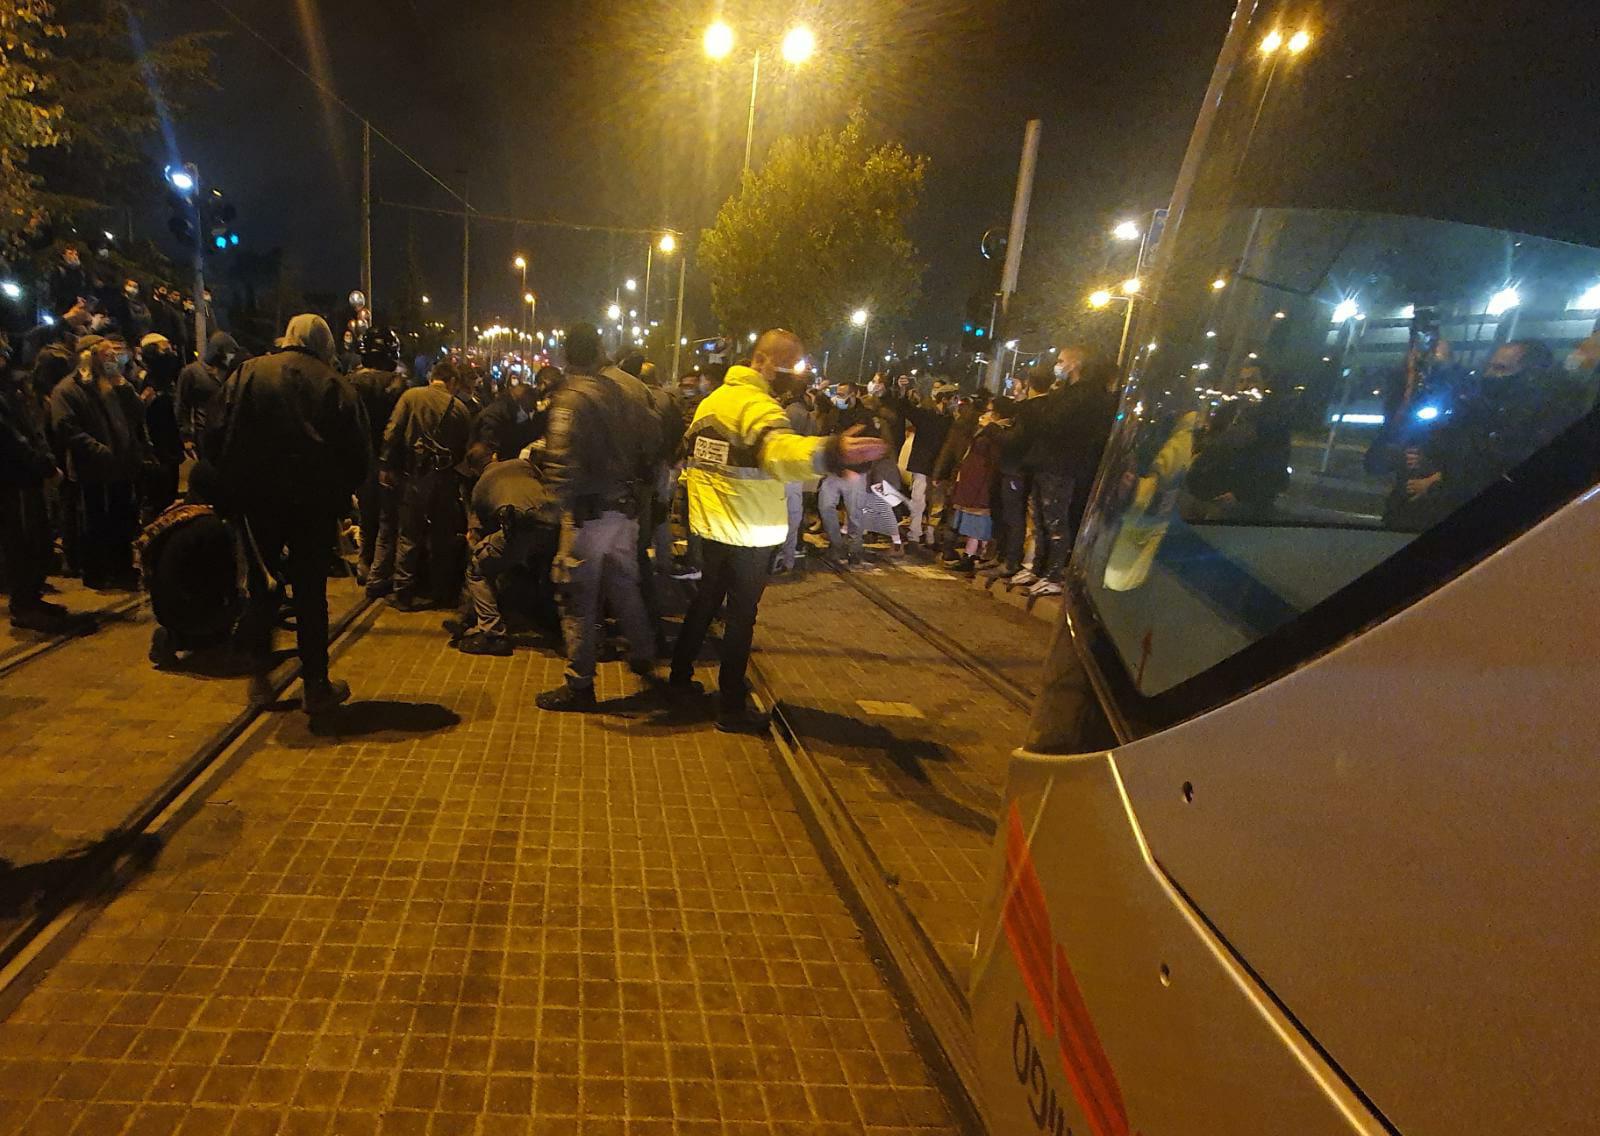 הלילה השלישי ברציפות: עשרות התפרעו על רקע מות הנער במרדף משטרתי, 28 נעצרו